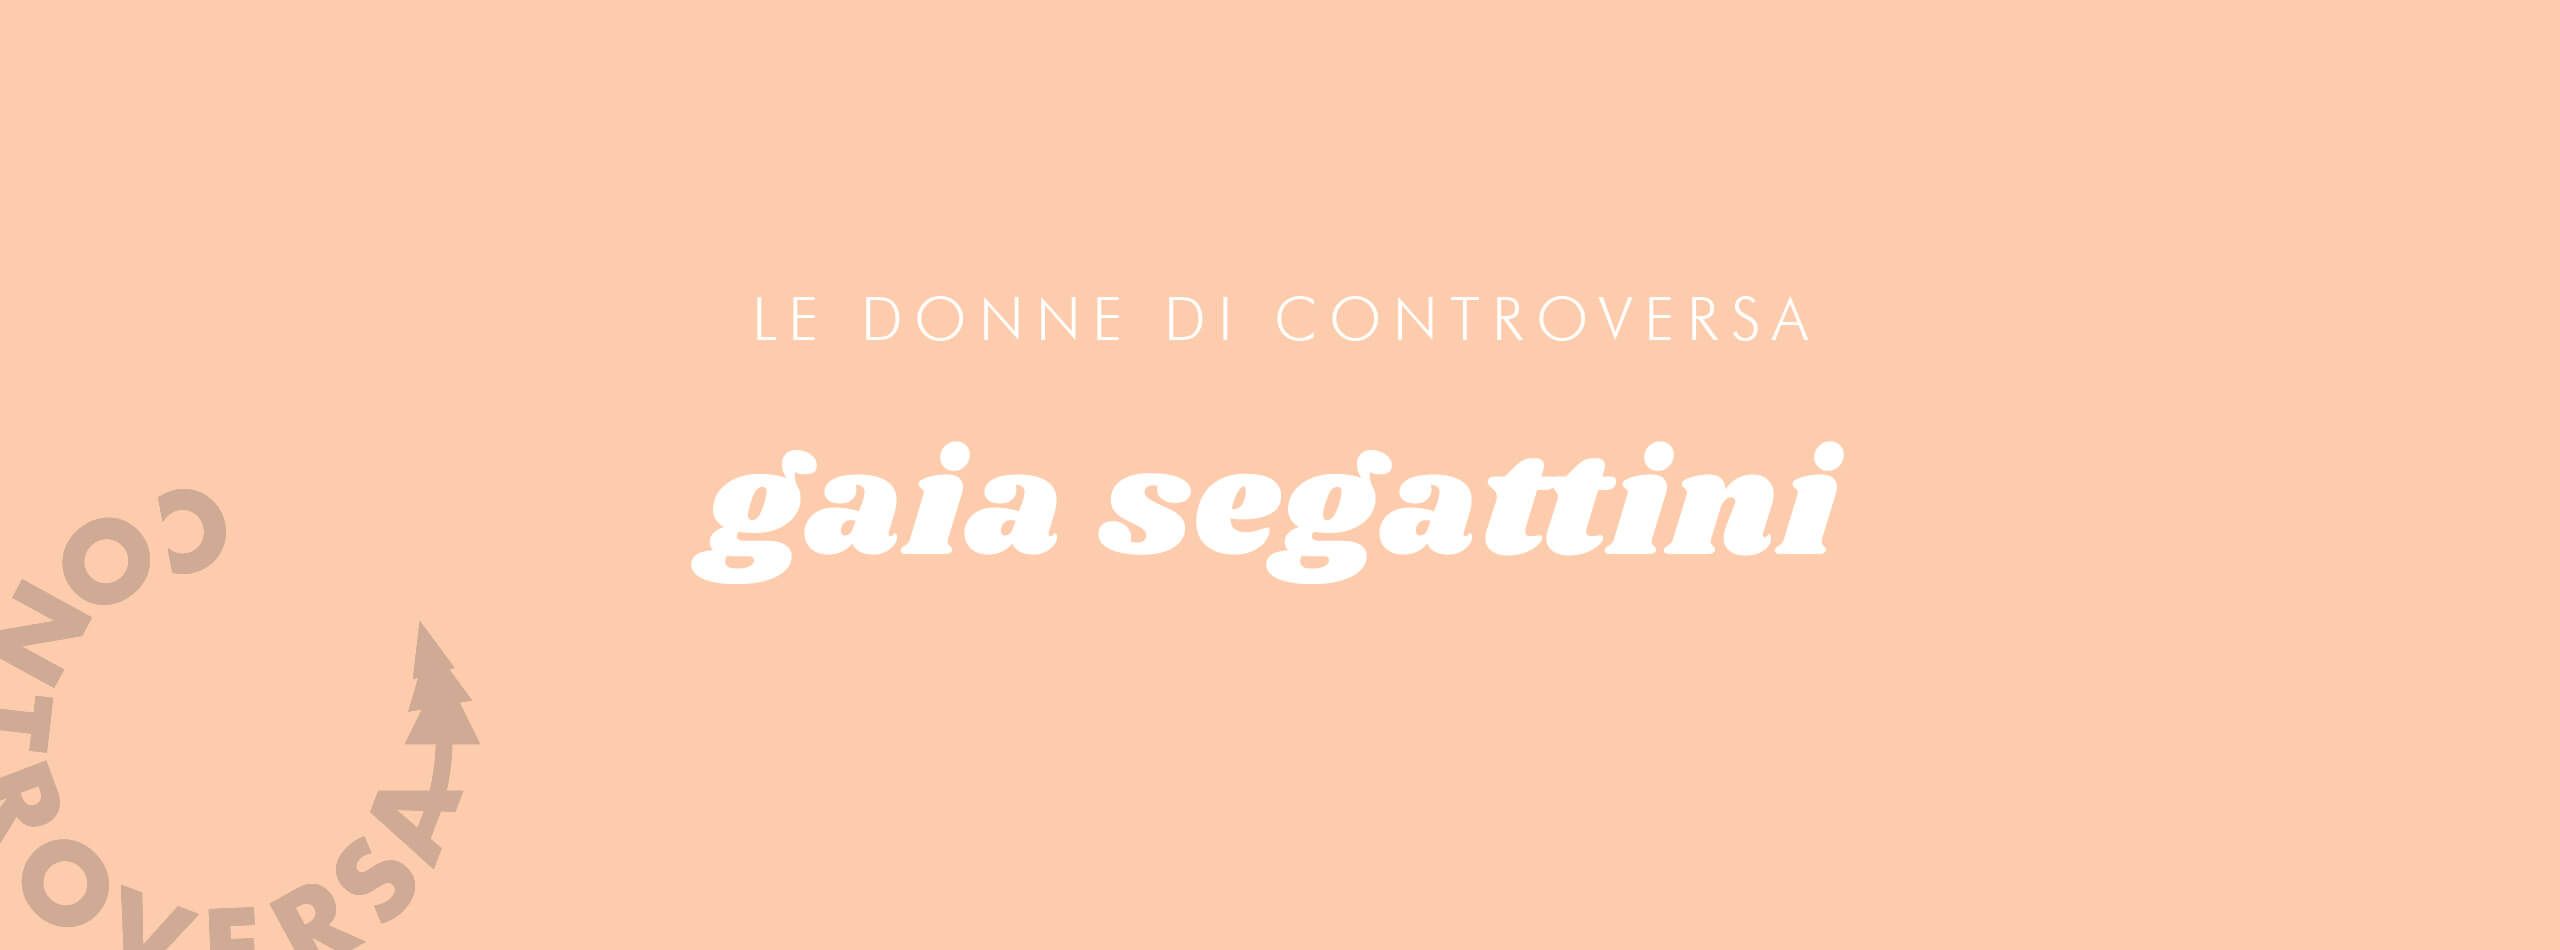 Controversa incontra: Gaia Segattini